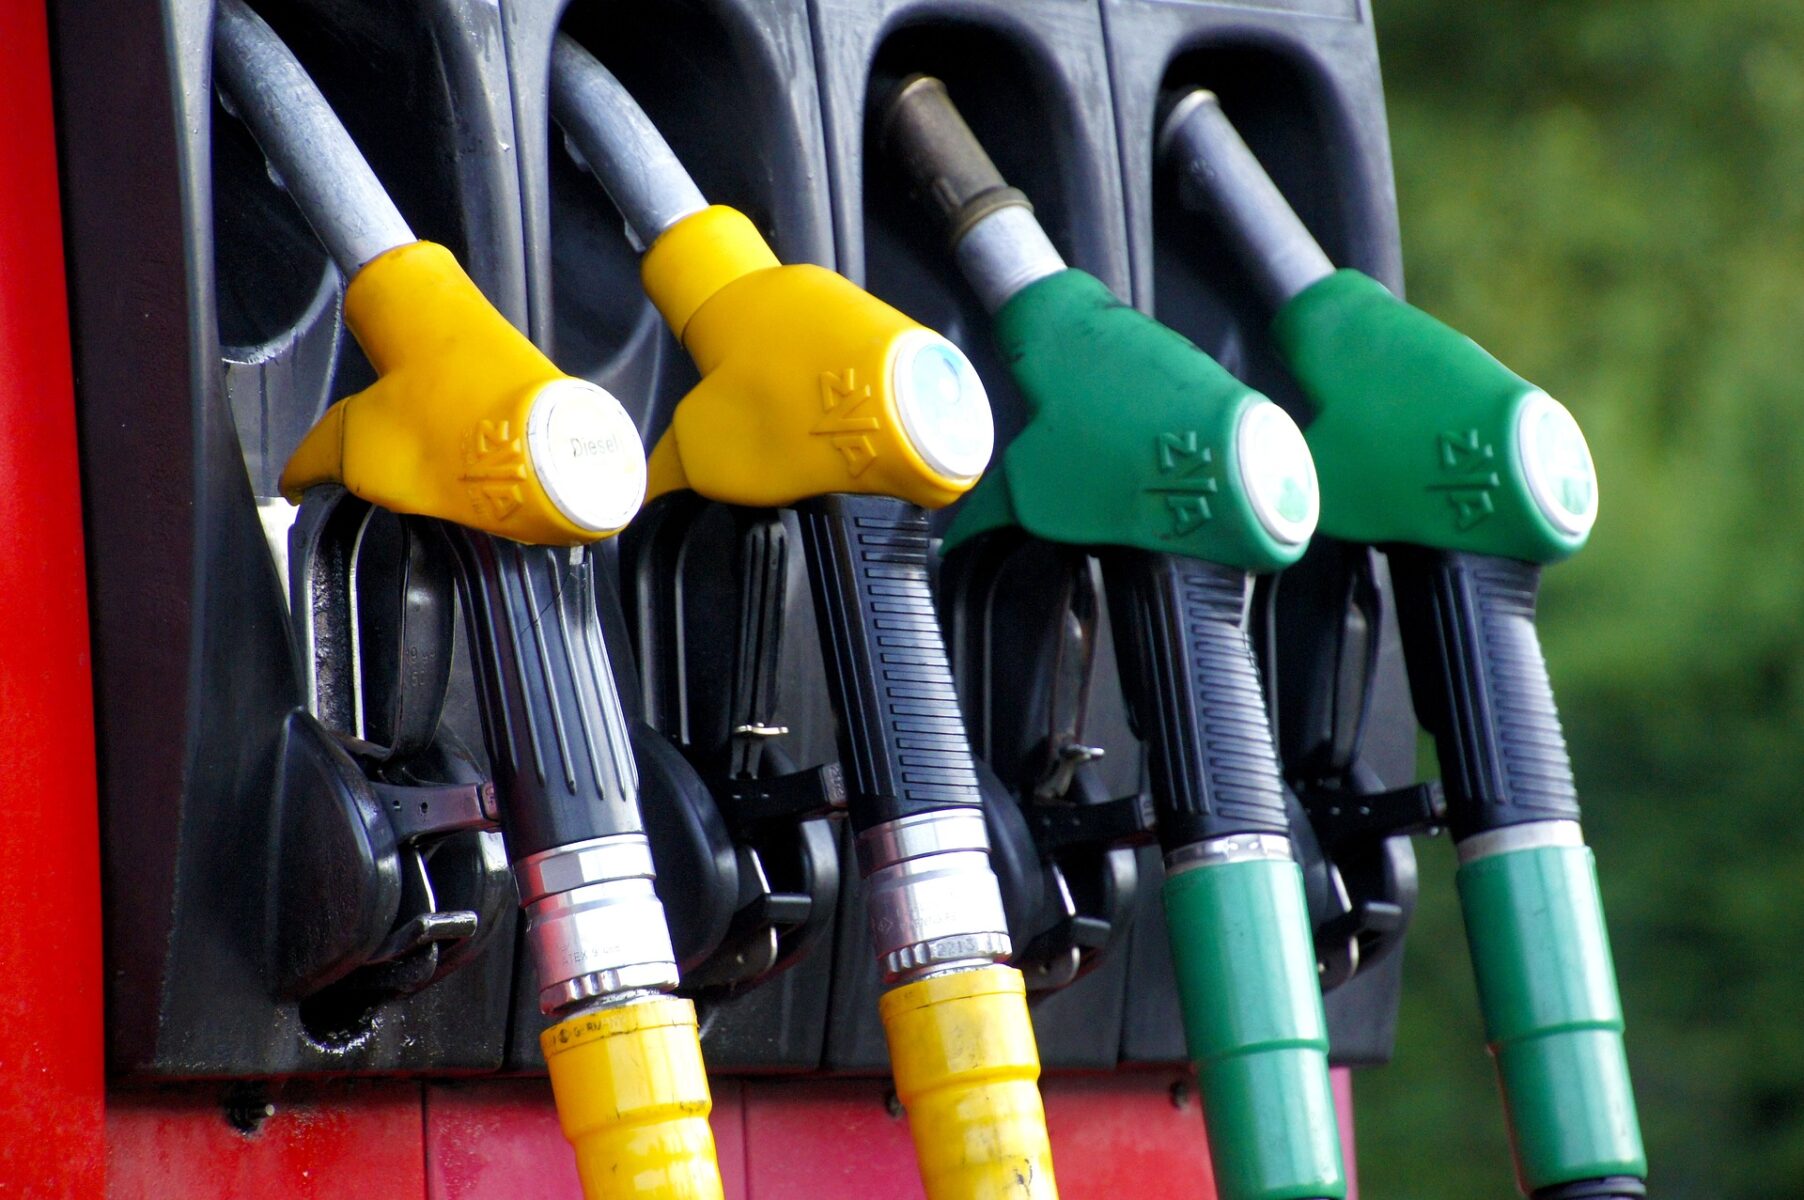 Los precios de la gasolina en Estados Unidos han alcanzado precios históricos. | Foto: Pixabay